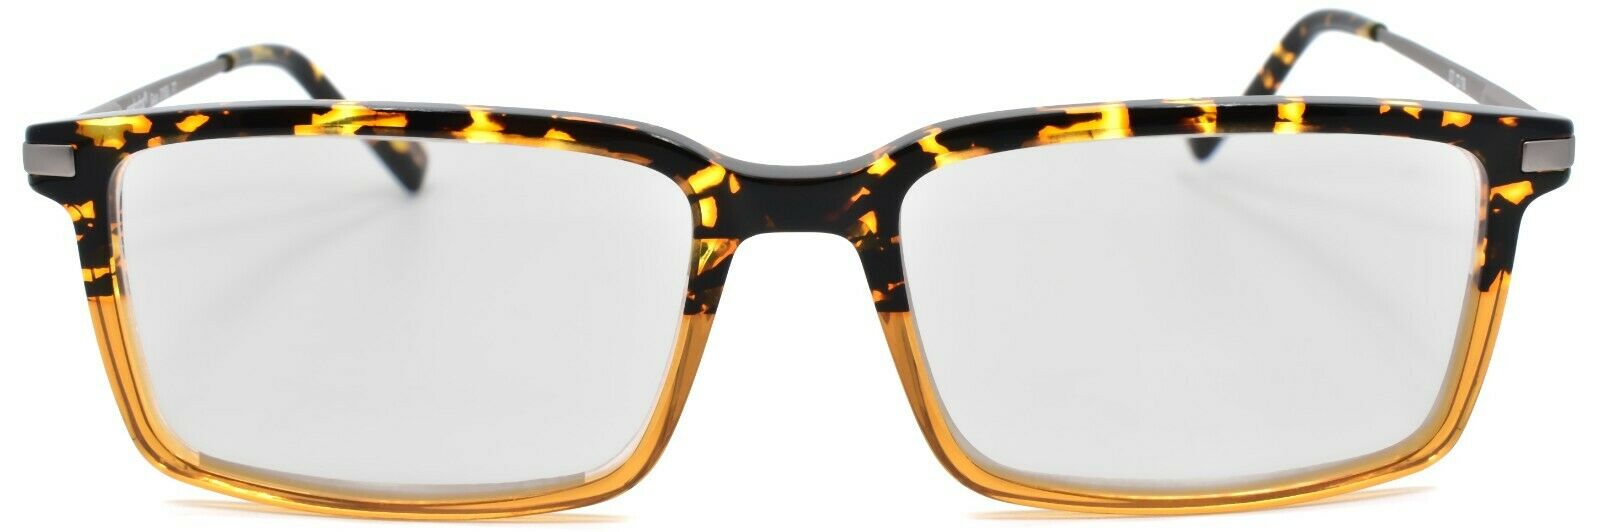 2-Eyebobs Gus 3155 77 Men's Reading Glasses Amber Tortoise / Light Gunmetal +1.50-842754172103-IKSpecs